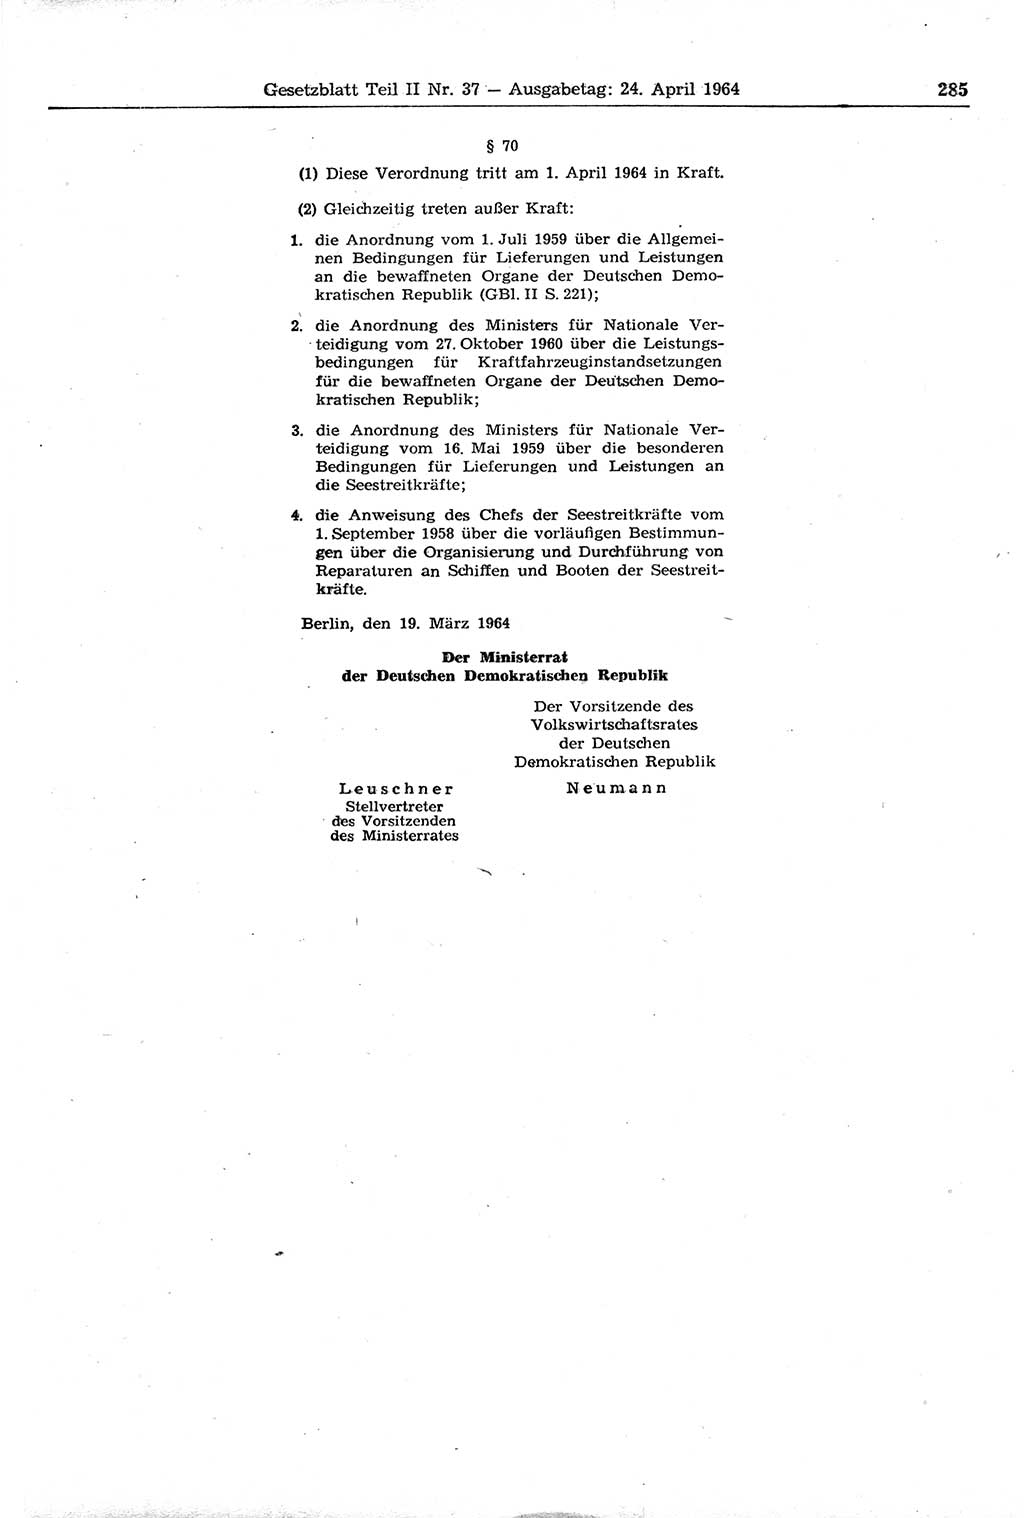 Gesetzblatt (GBl.) der Deutschen Demokratischen Republik (DDR) Teil ⅠⅠ 1964, Seite 285 (GBl. DDR ⅠⅠ 1964, S. 285)